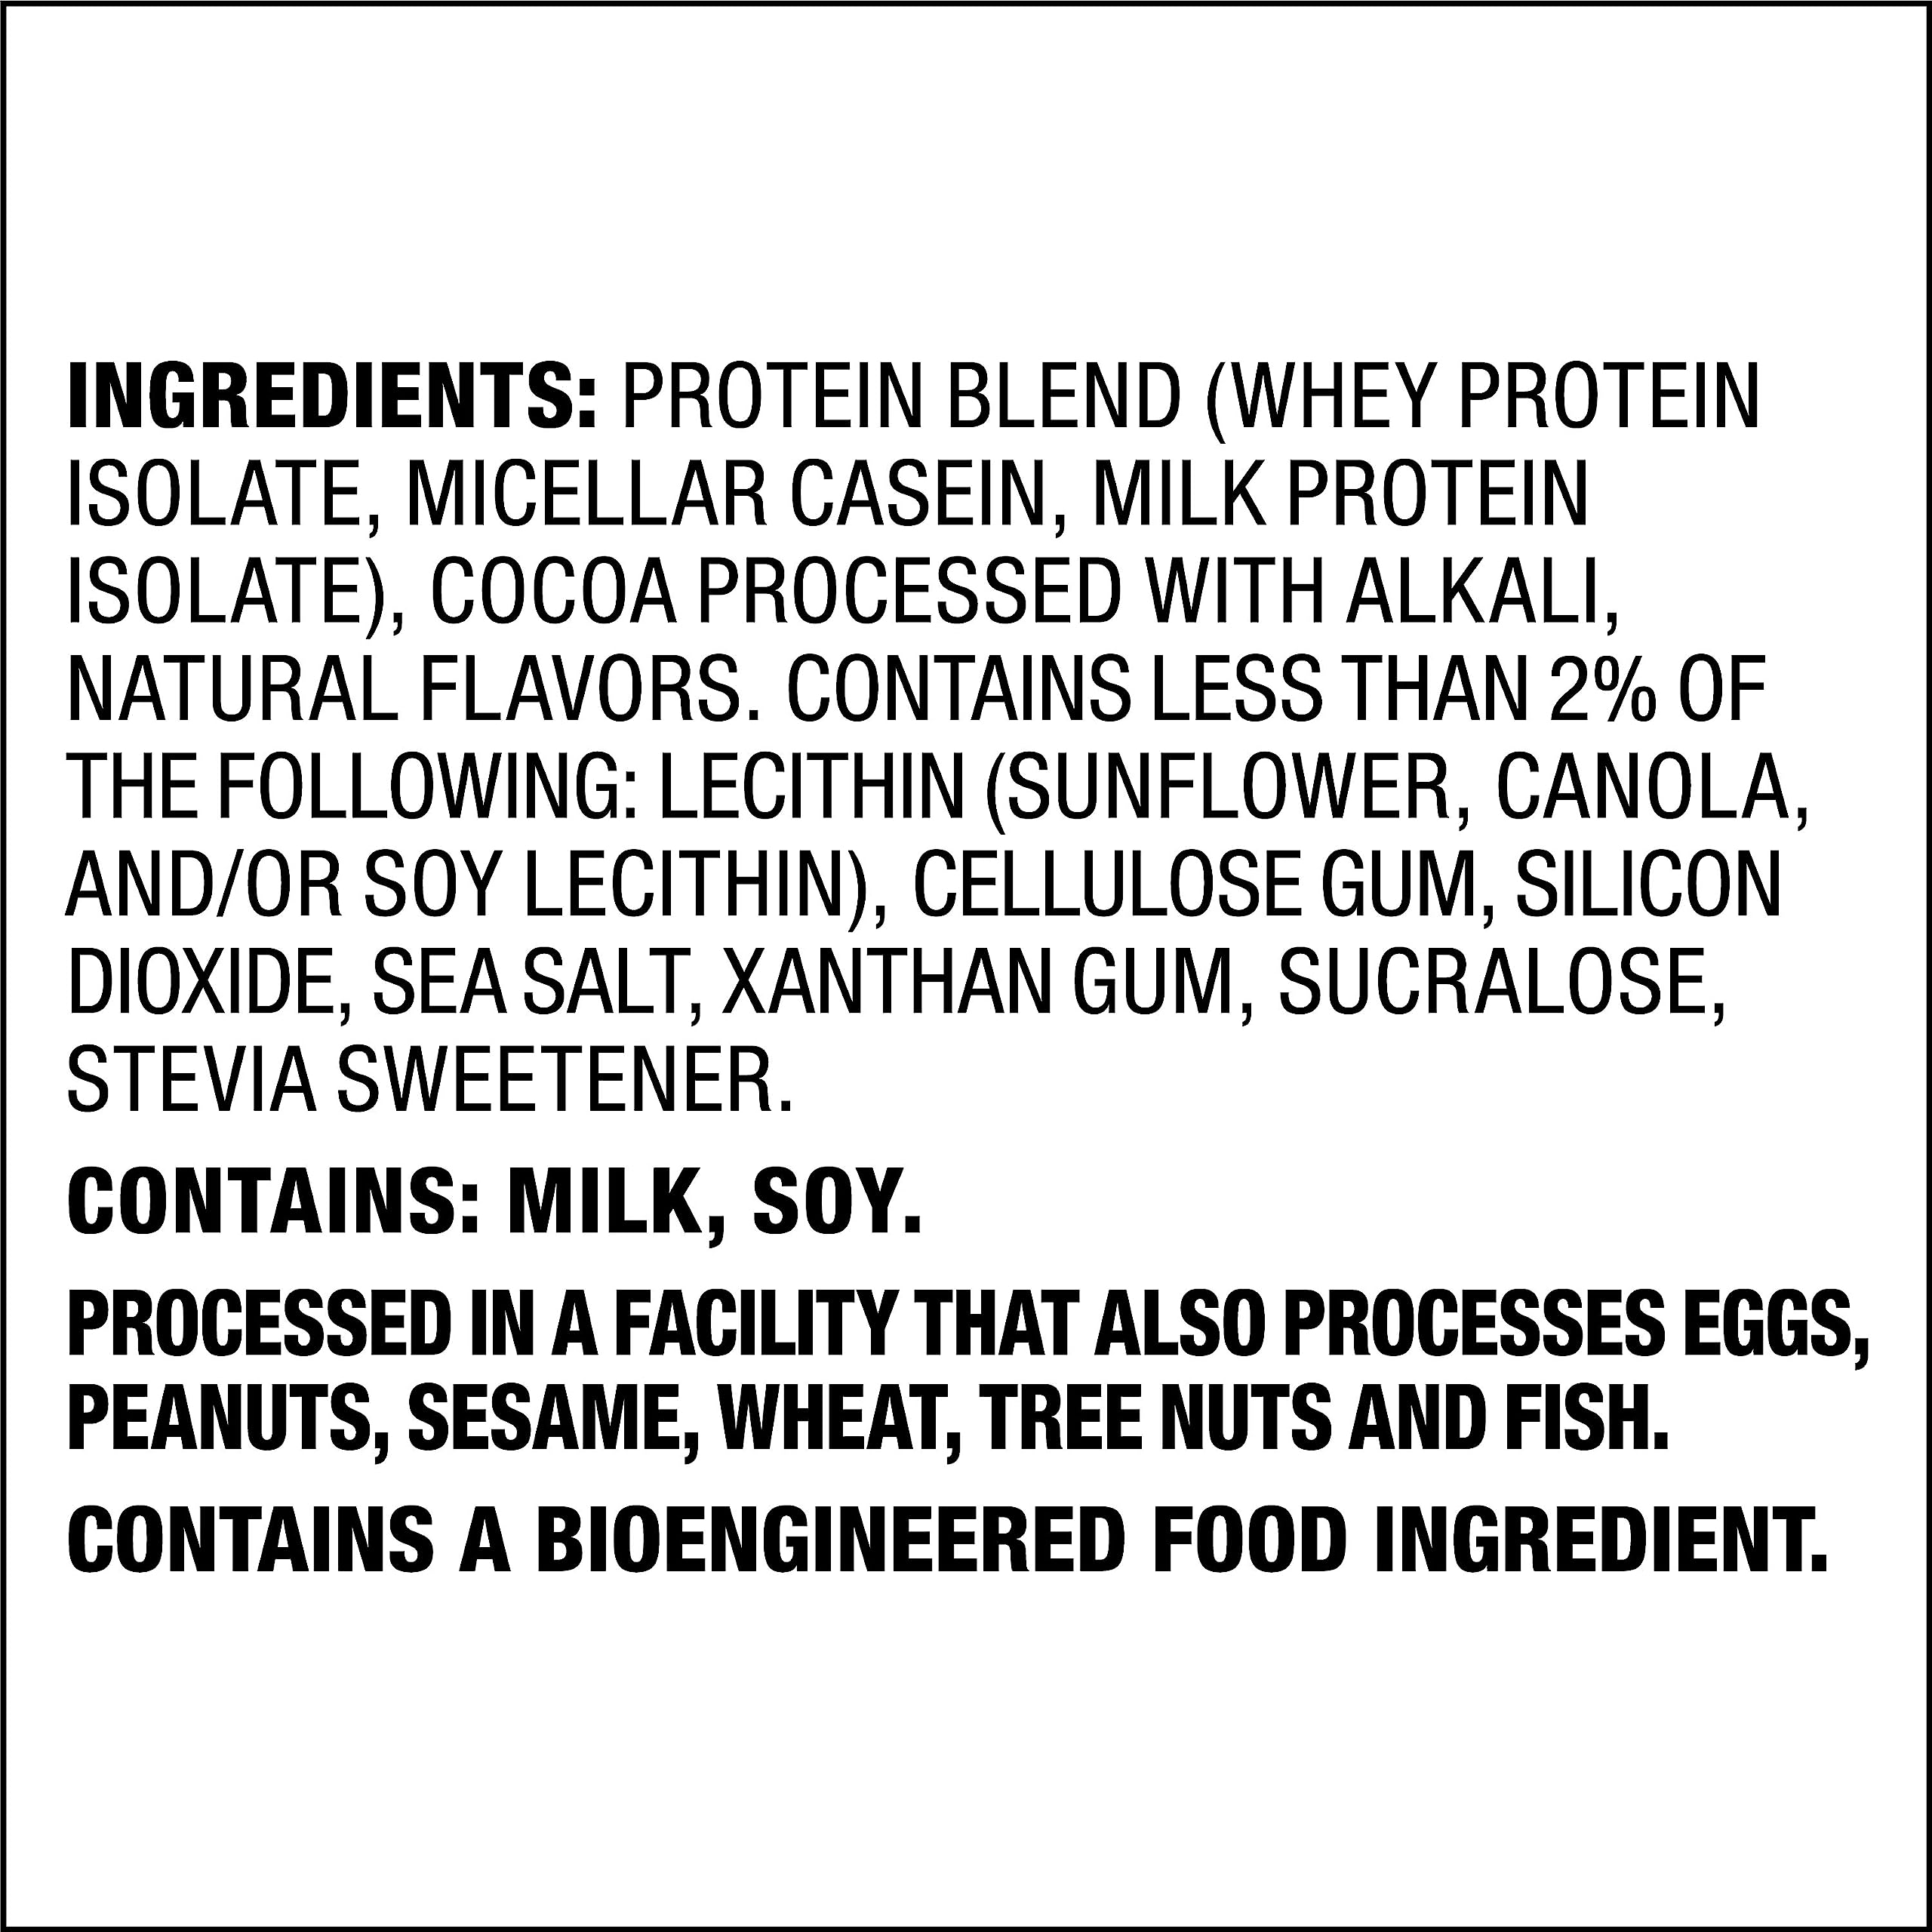 Quest Nutrition Chocolate Milkshake Protein Powder; 22g Protein; 1g Sugar; Low Carb; Gluten Free; 1.6 Pound; 24 Servings